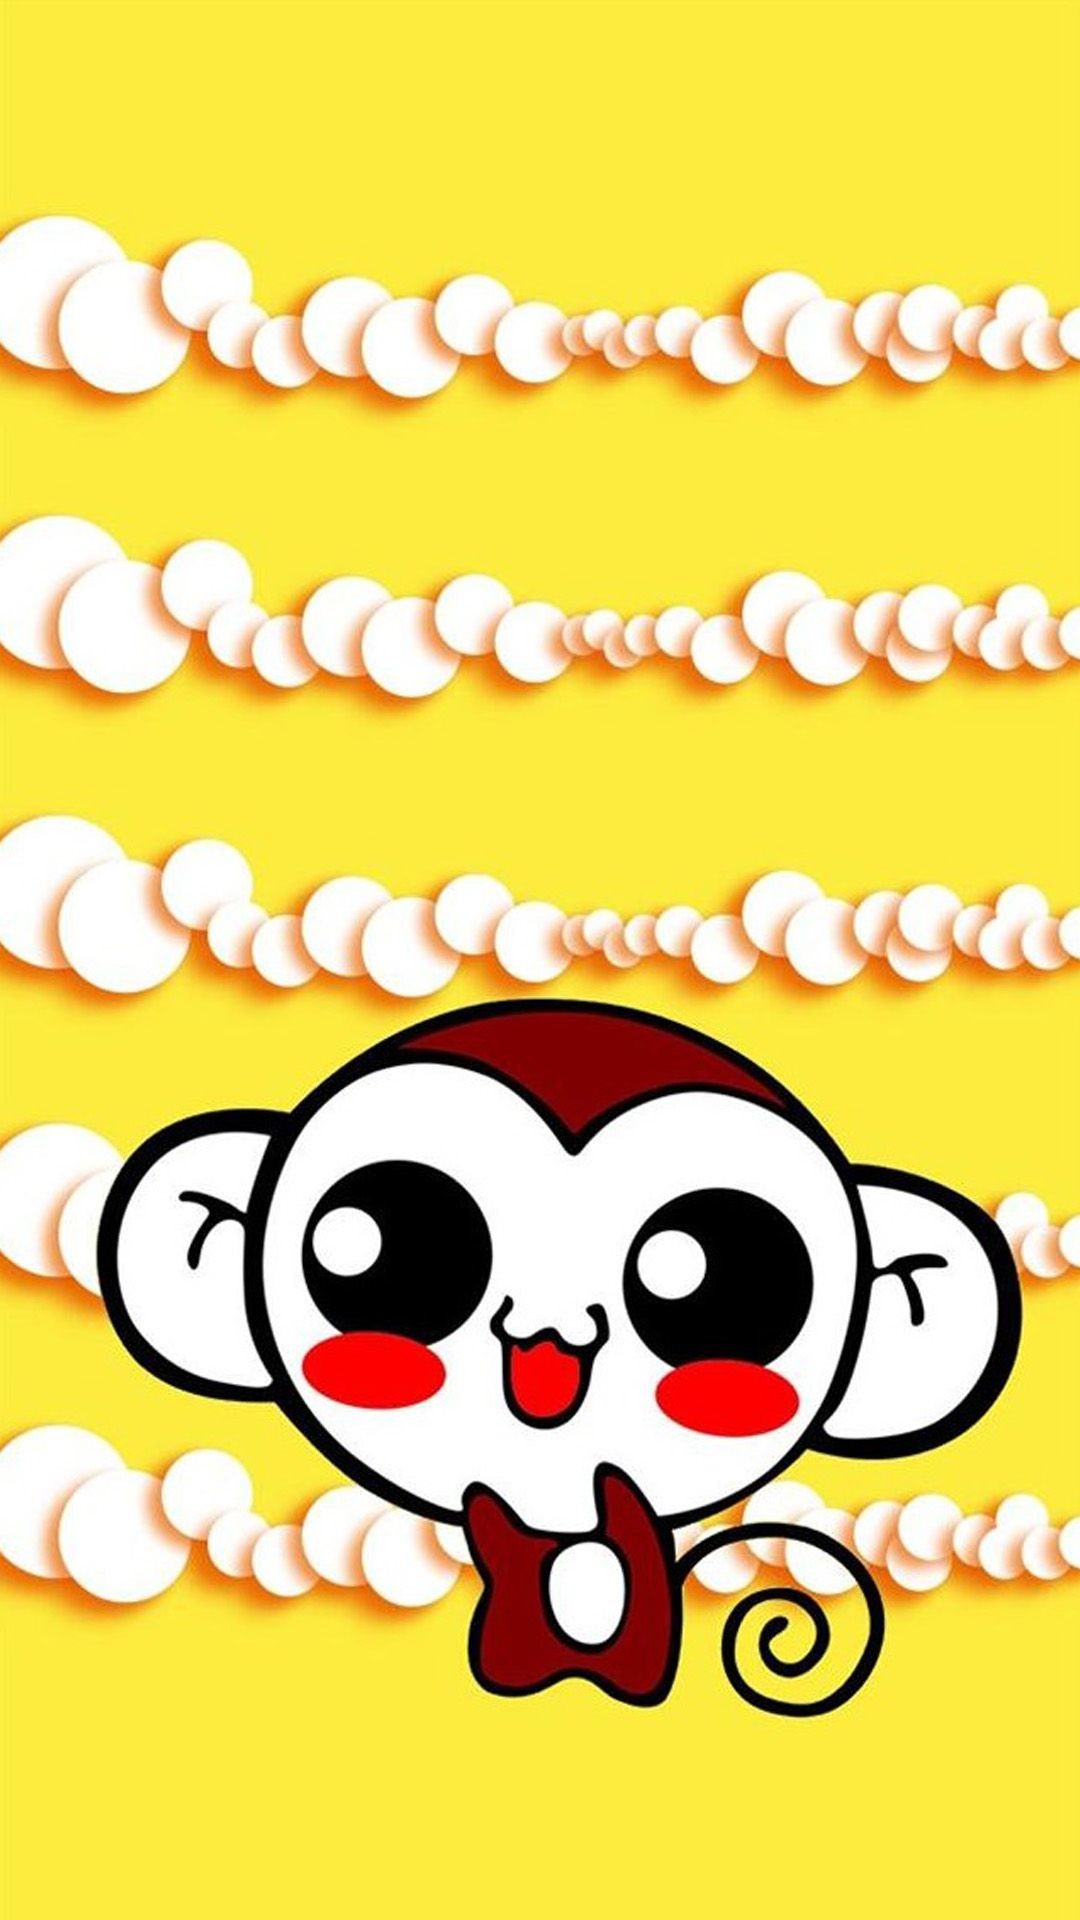 Cute Sweet Hippie Monkey Iphone 6 Wallpaper Download - Cute Iphone  Wallpapers Monkey - 1080x1920 Wallpaper 